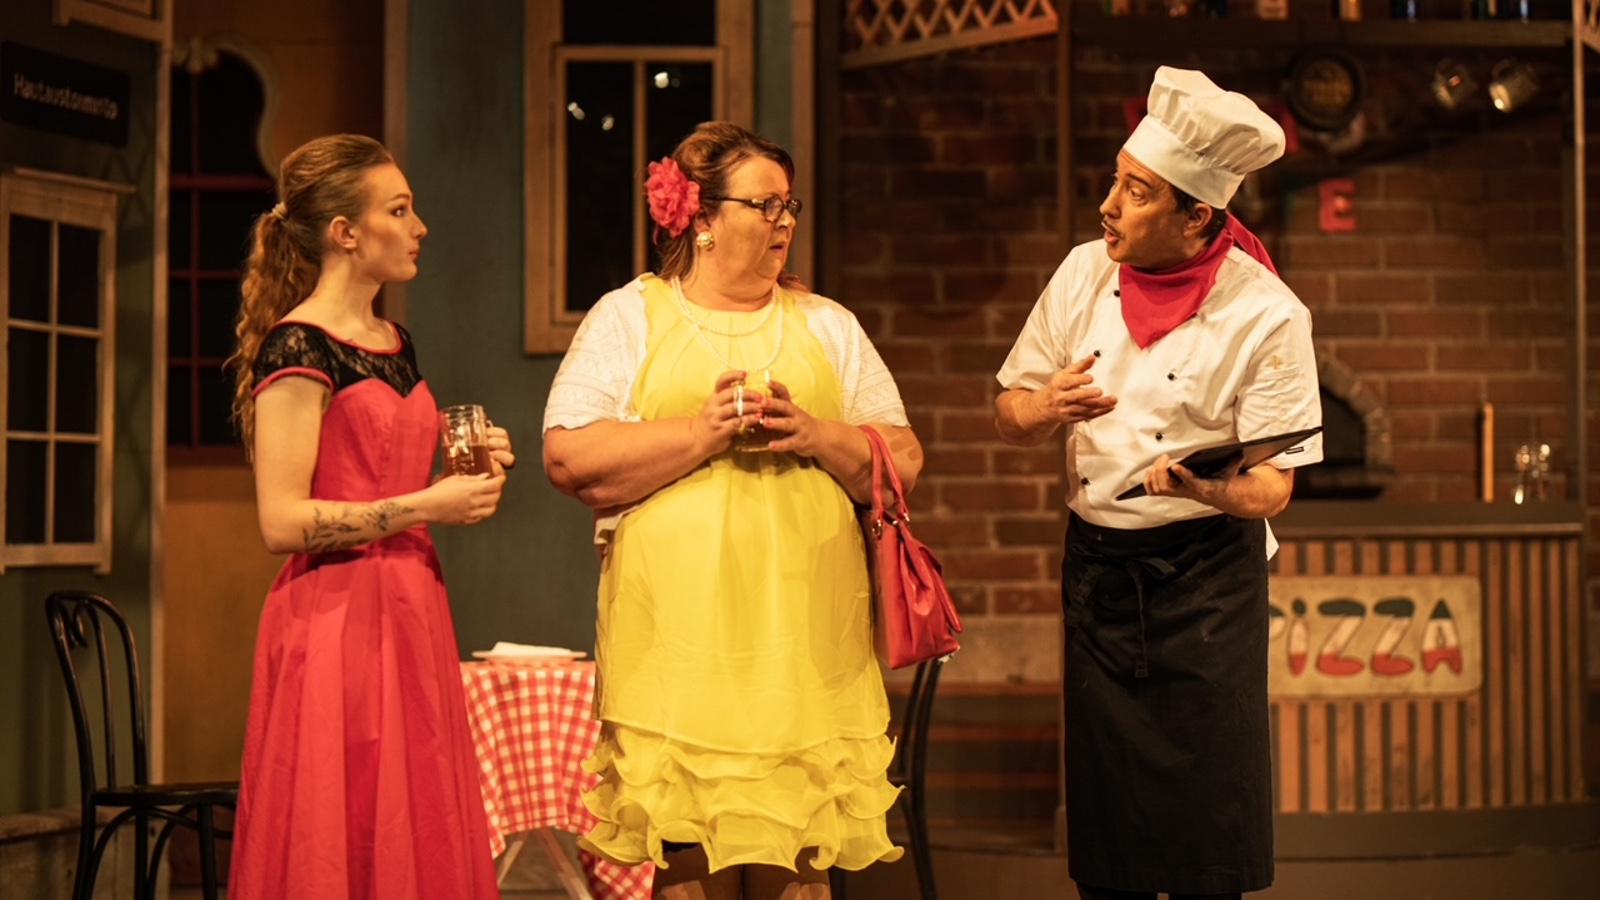 Kuvassa on kaksi naista seisoo keskustelemassa pizzakokin kanssa. Vasemman puoleisella naisella on punainen mekko ja hänen vieressään olevalla keltainen mekko päällään.  Tila on pizzaravintola.